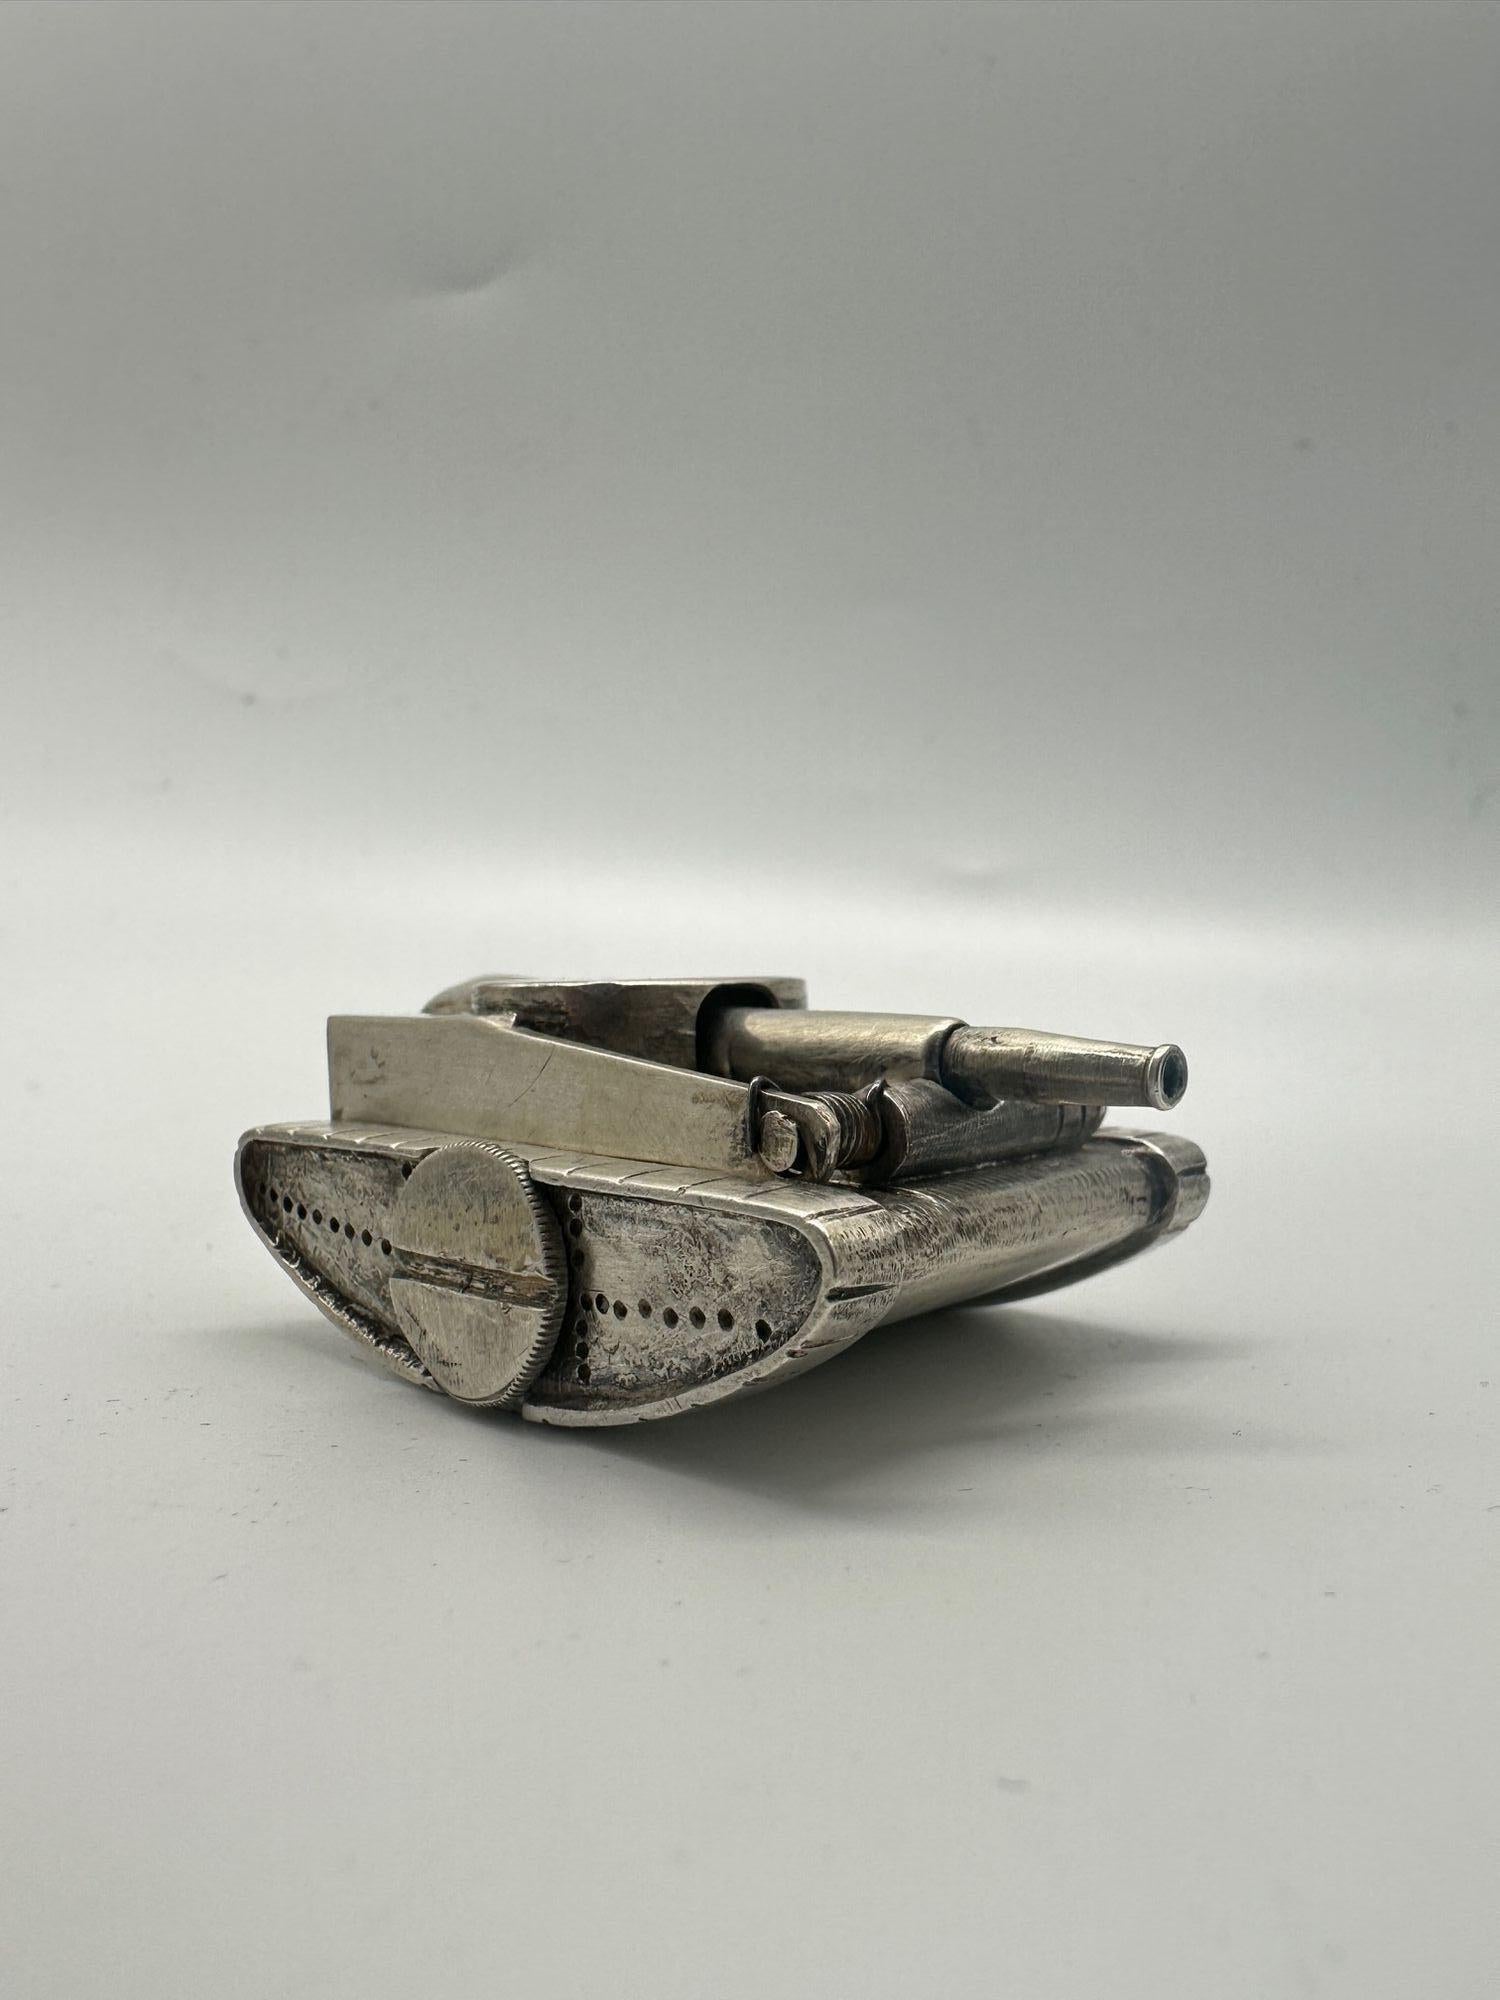 Das Design des Tischfeuerzeugs besticht durch eine längliche Panzerform, die an alte Artilleriegranaten erinnert. Die strukturierte silberne Oberfläche weist verschlungene Muster auf, die von der sorgfältigen Handwerkskunst und dem künstlerischen